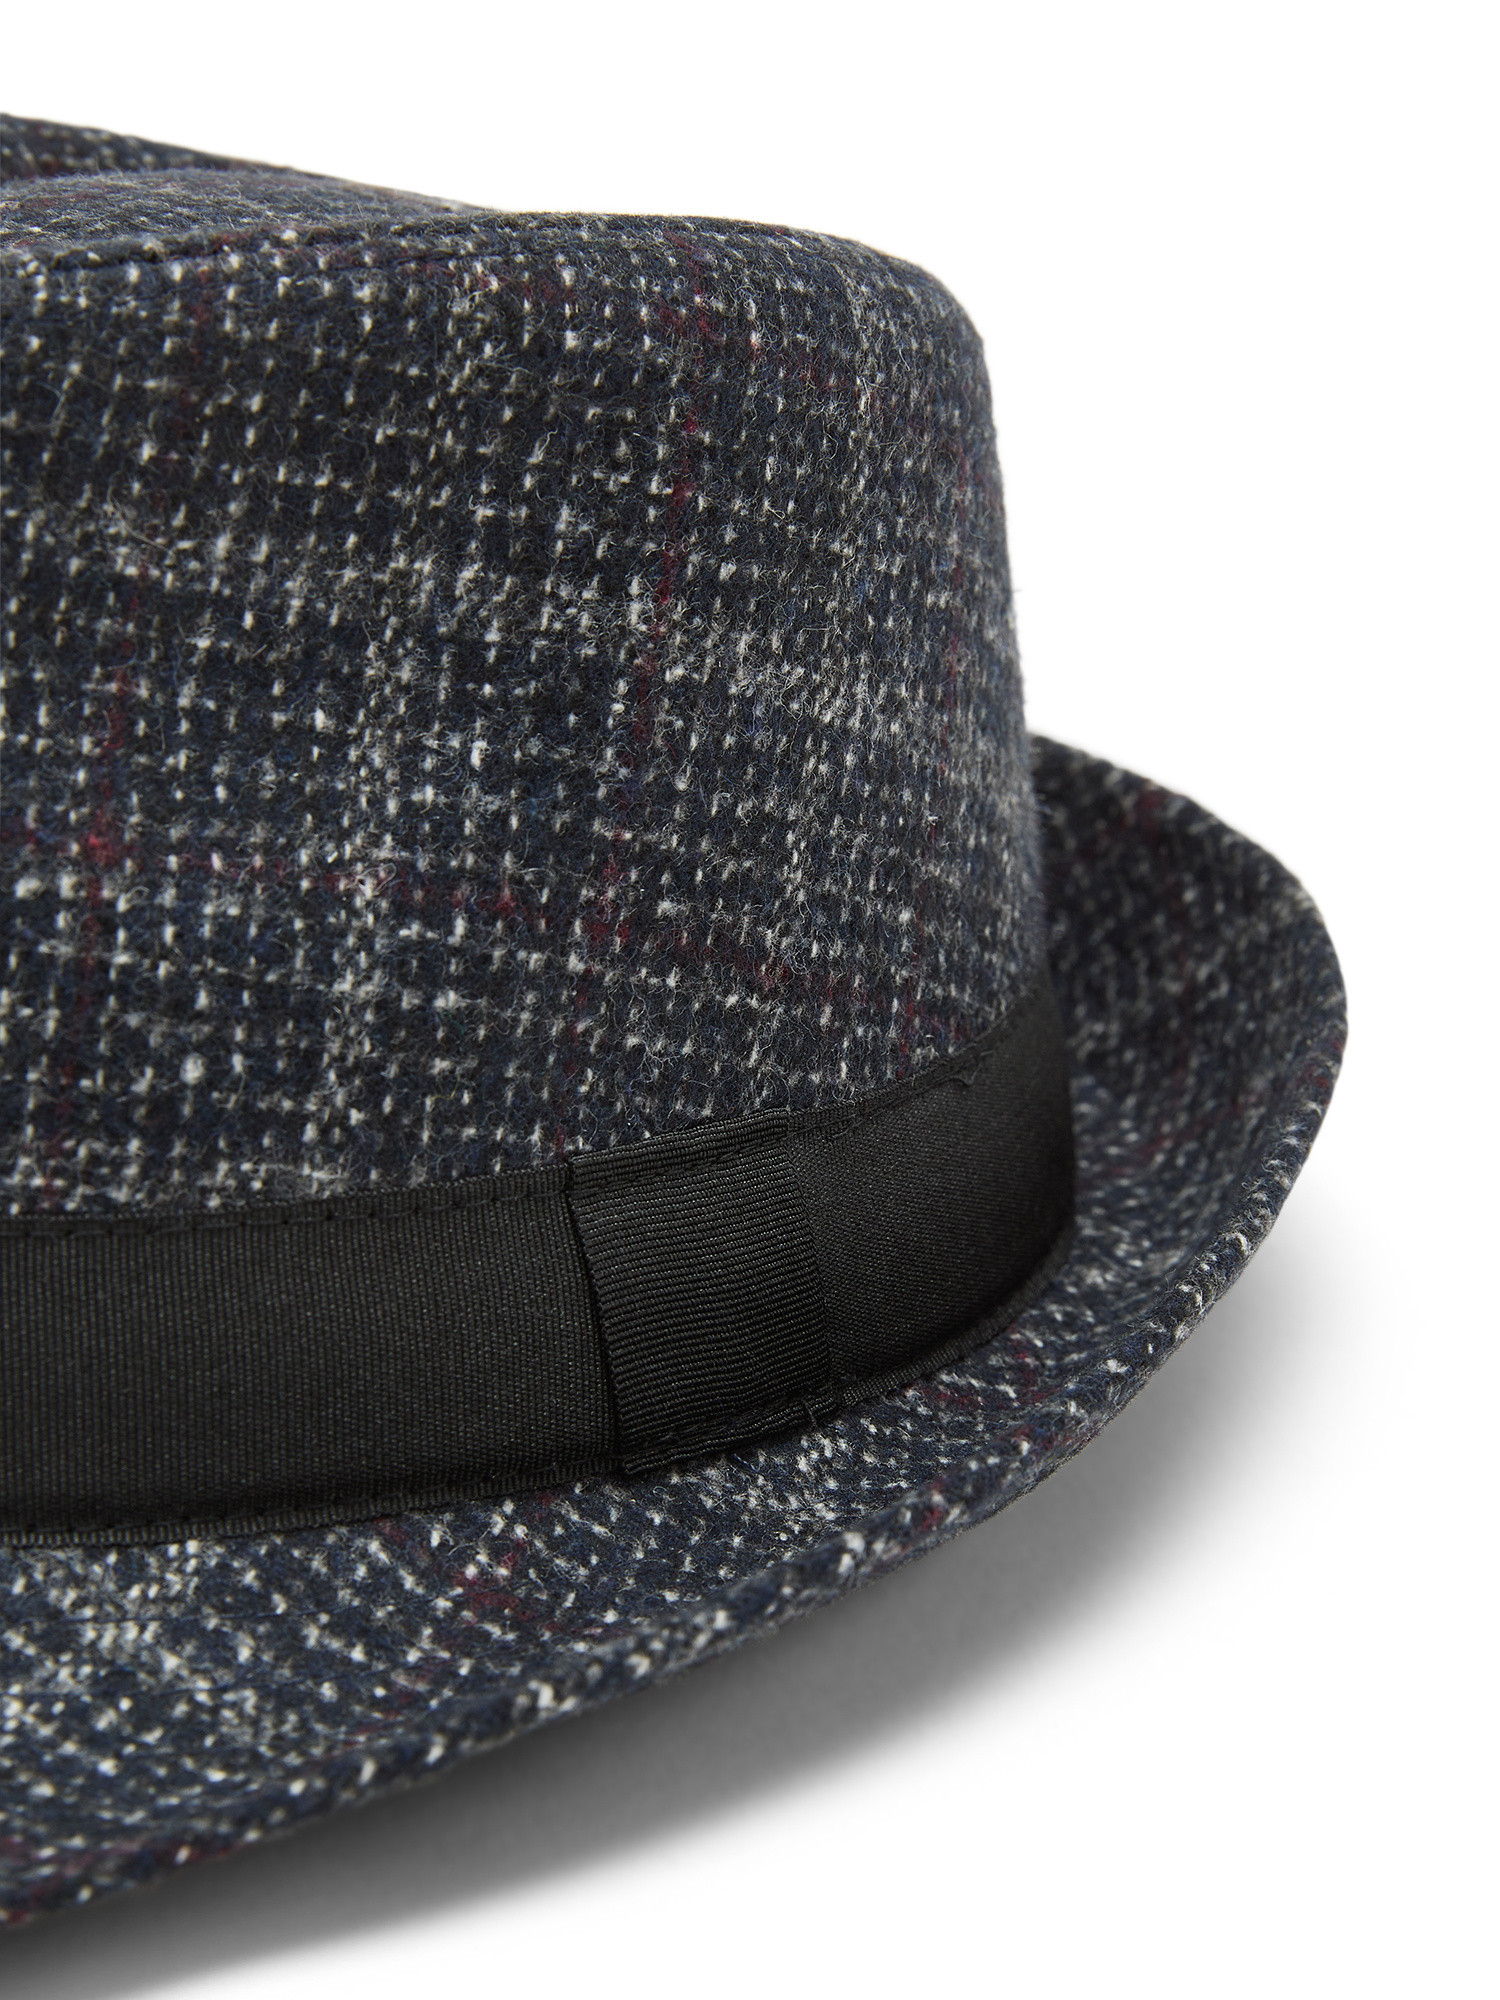 Luca D'Altieri - Tartan alpine hat, Blue, large image number 1